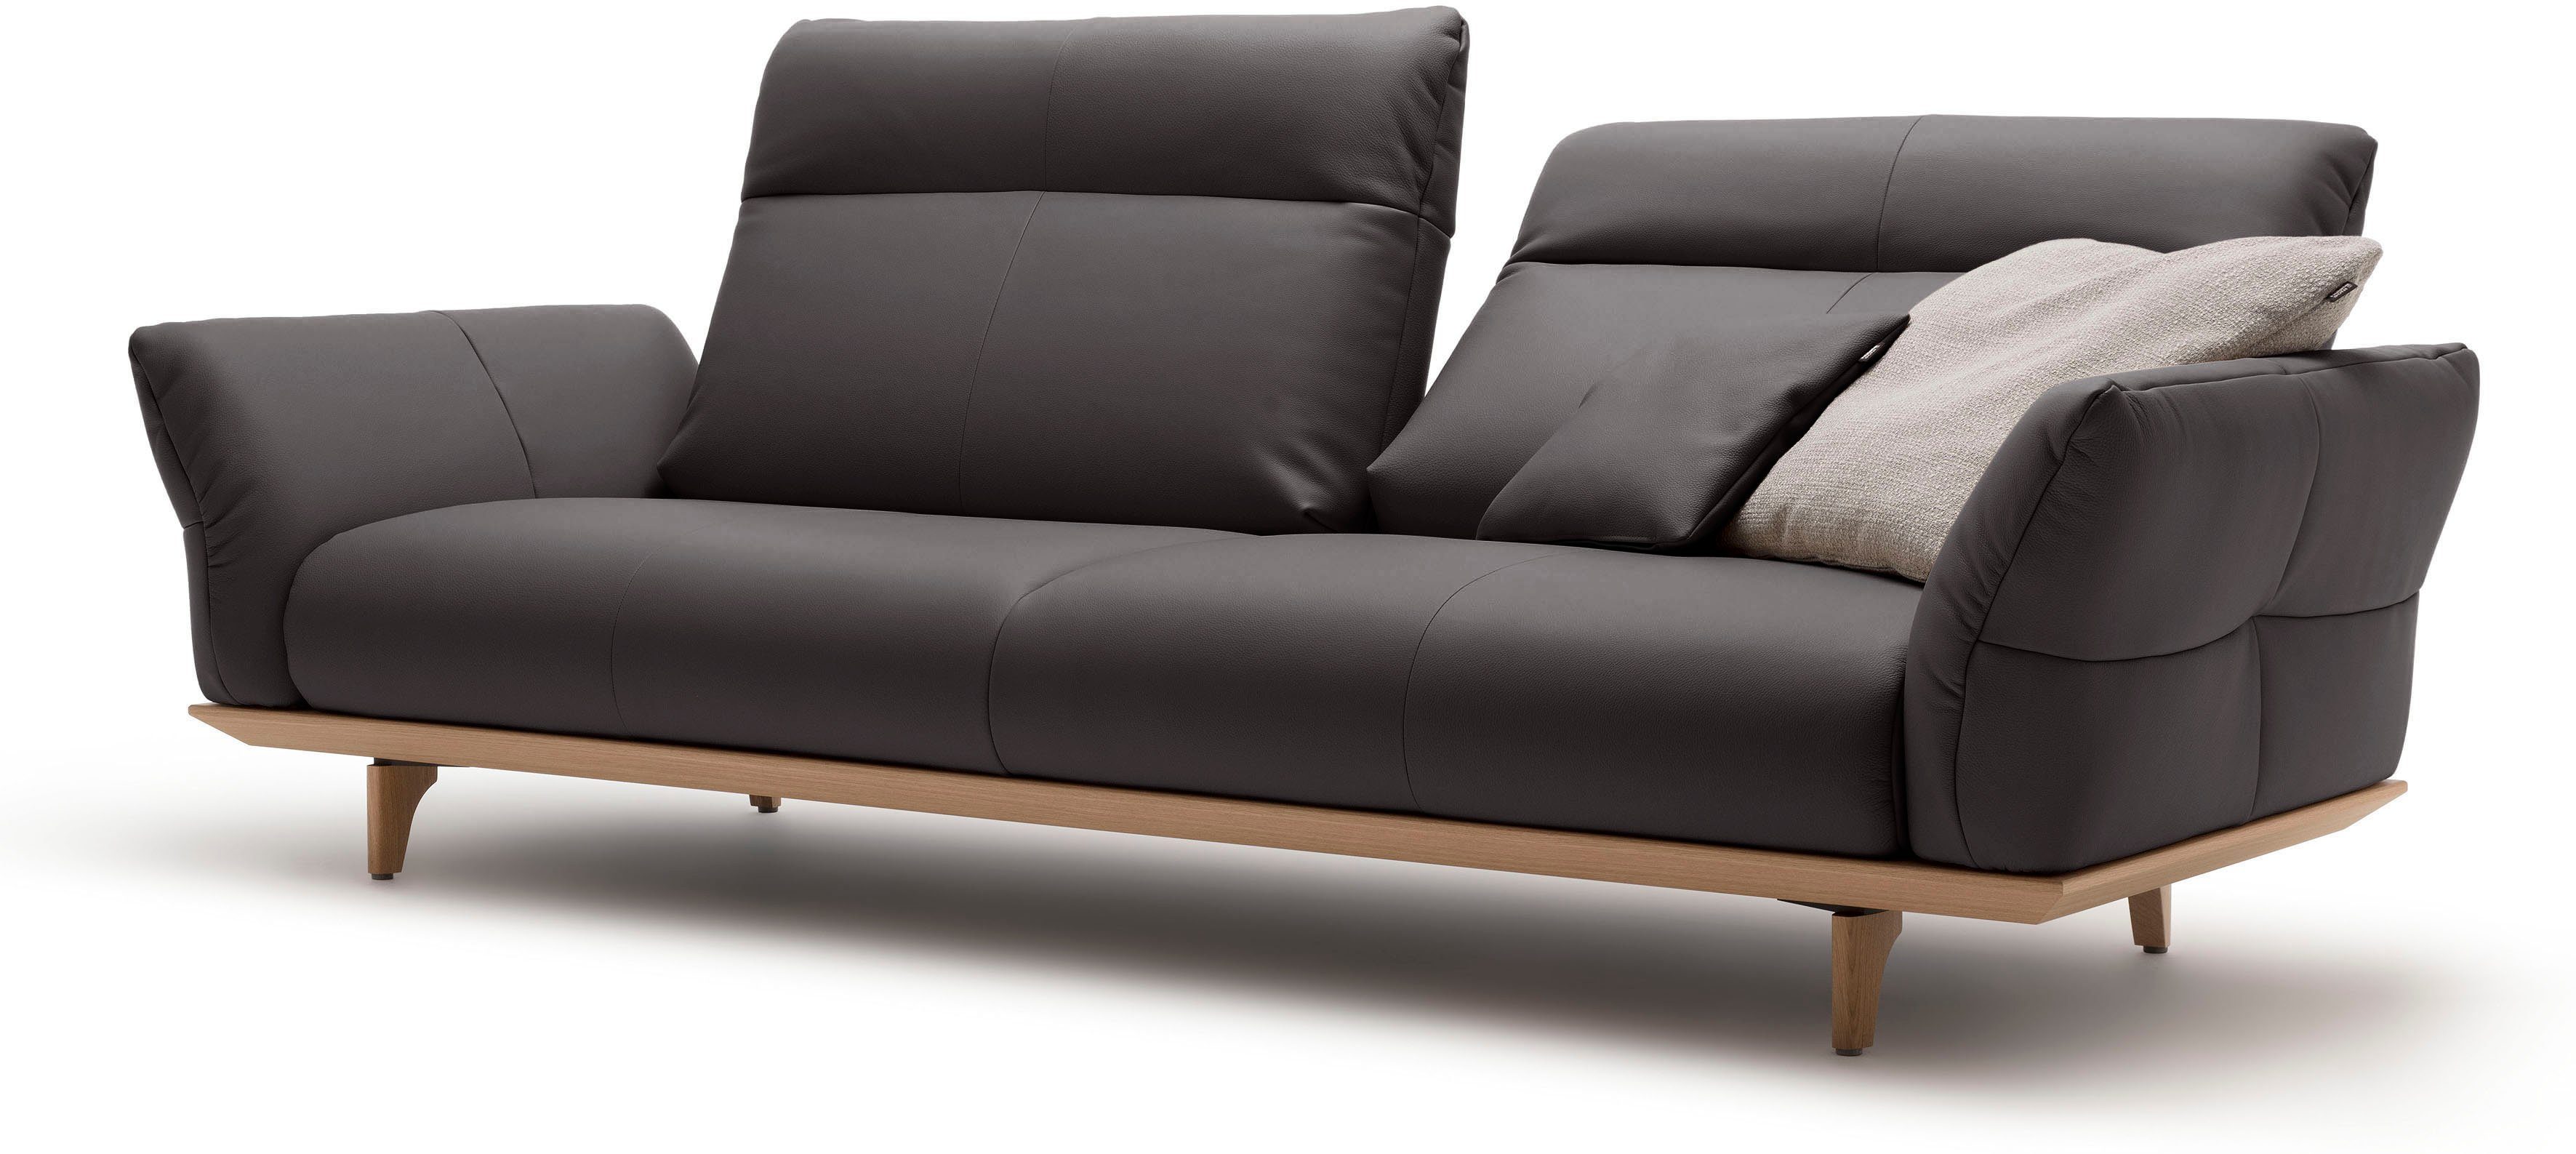 3,5-Sitzer Eiche Breite Füße sofa 228 cm hs.460, Sockel natur, hülsta Eiche, in